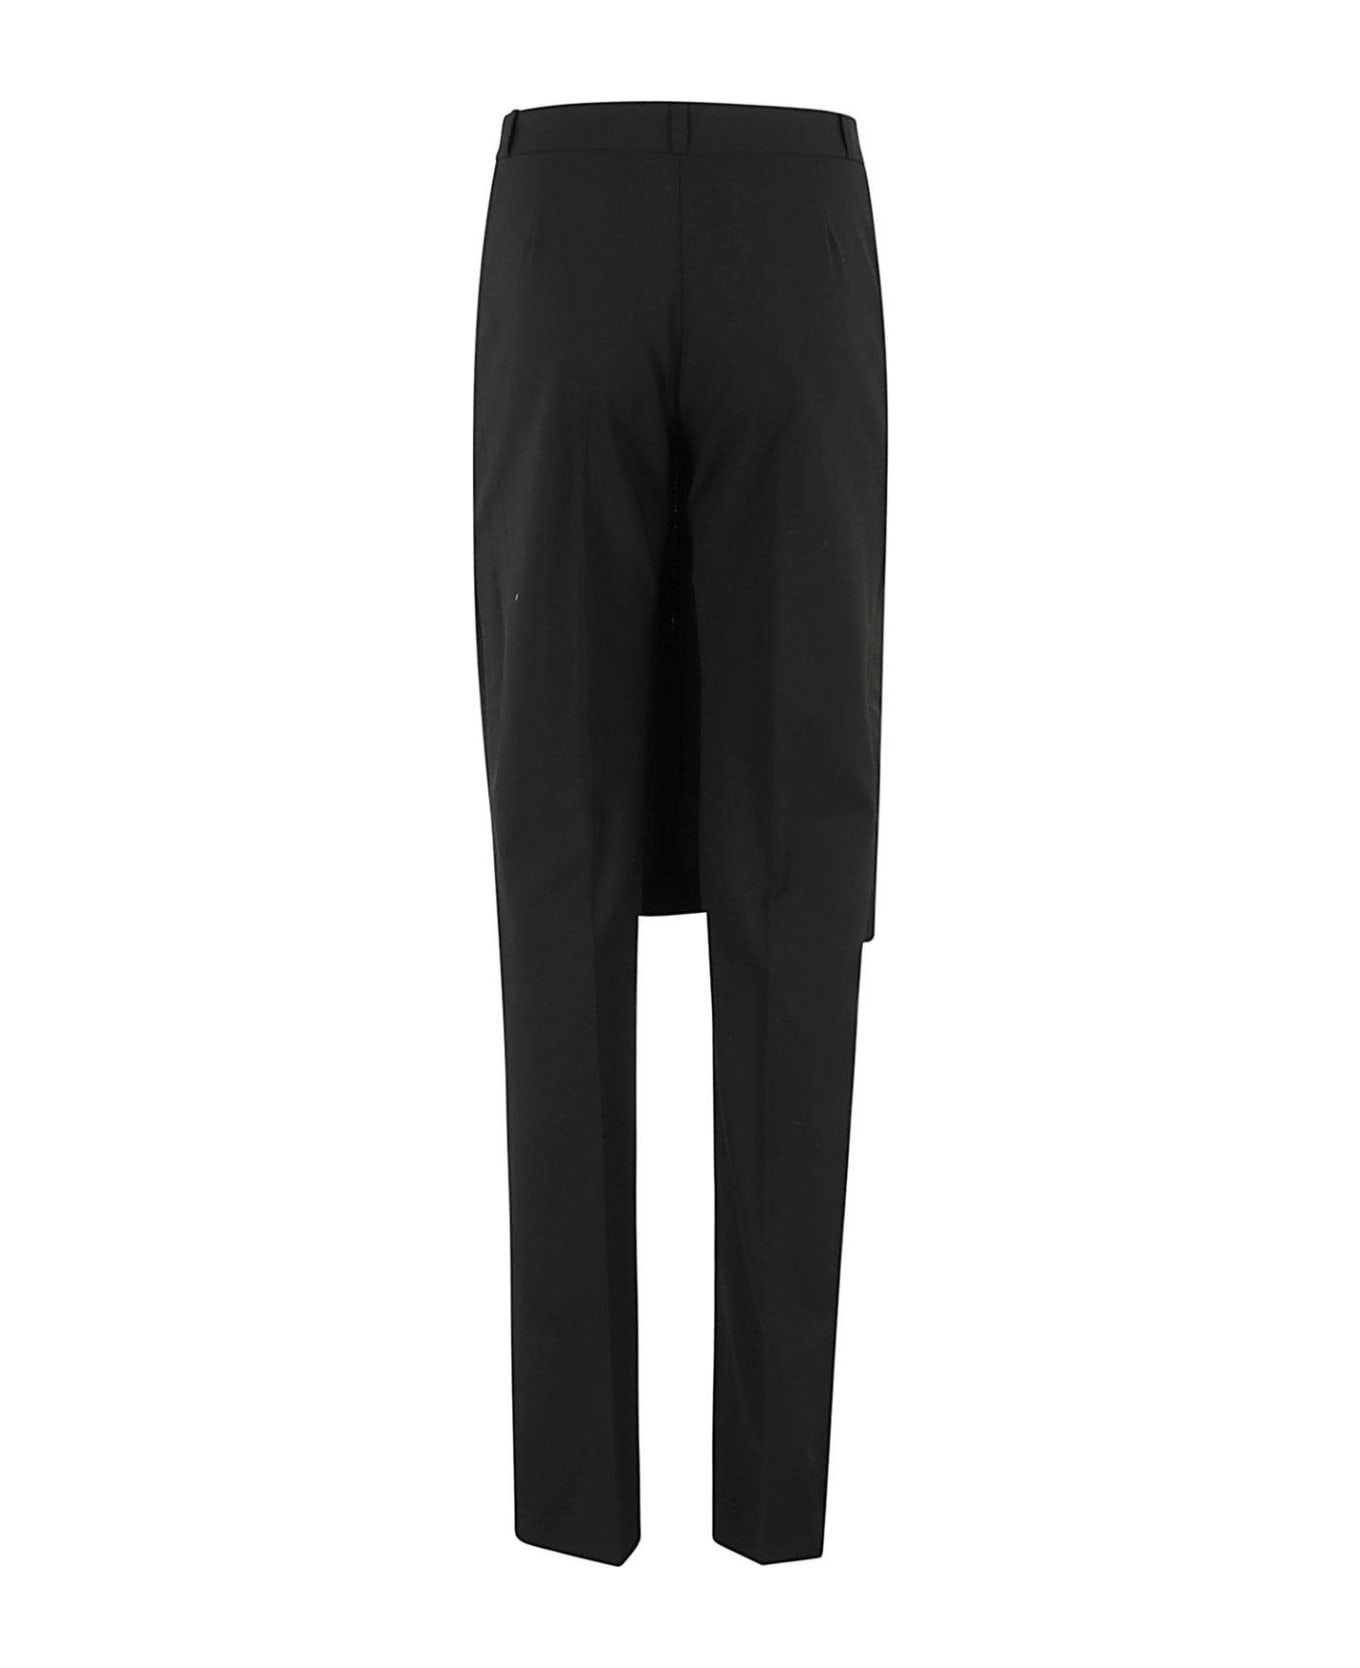 Coperni Skirt Tailored Trousers - Black